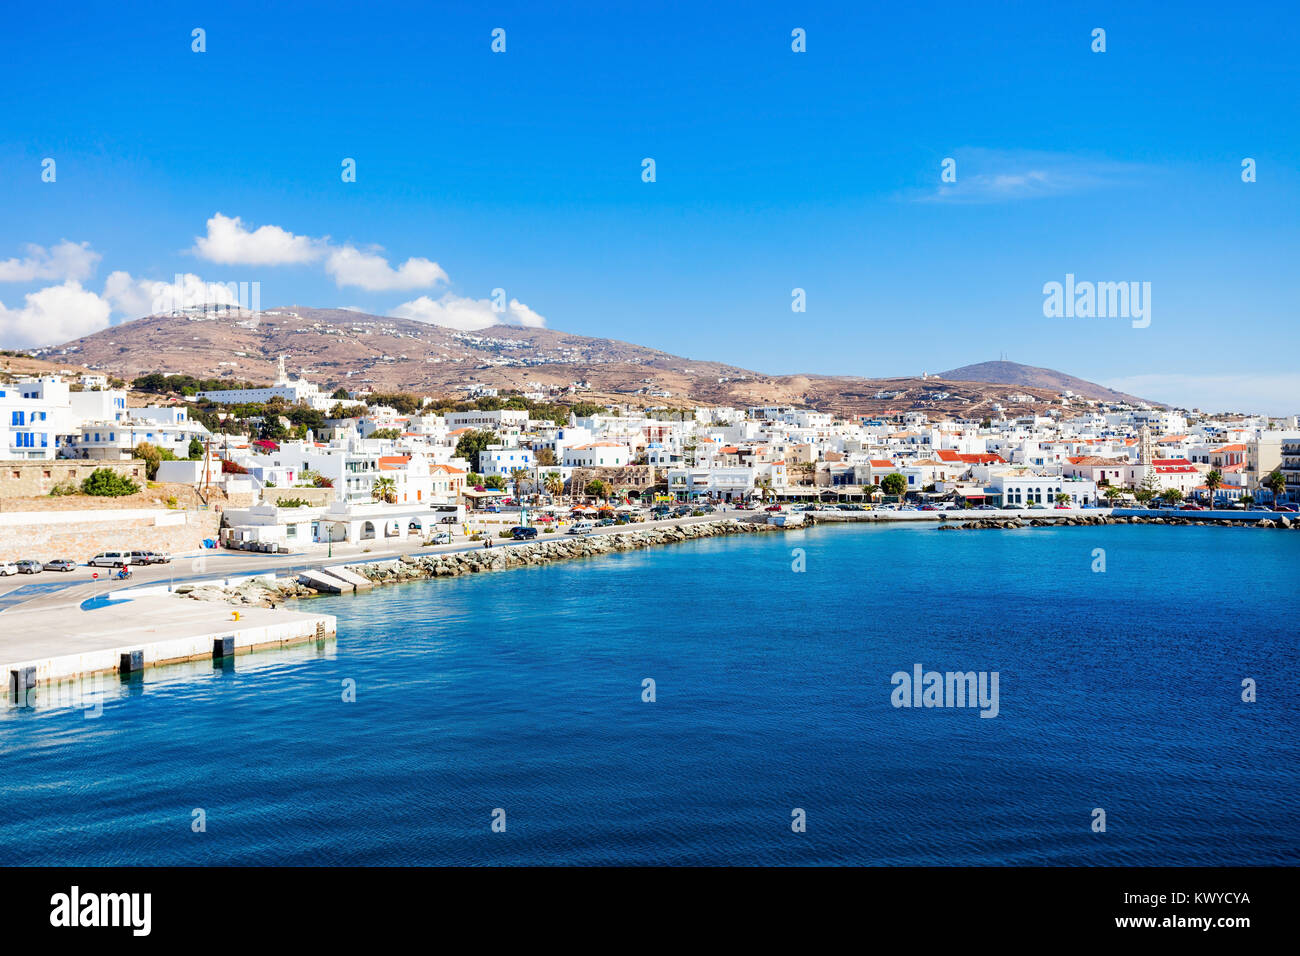 Die Insel Tinos Luftaufnahme. Tinos ist eine griechische Insel in der Ägäis, in der Inselgruppe der Kykladen, Griechenland. Stockfoto